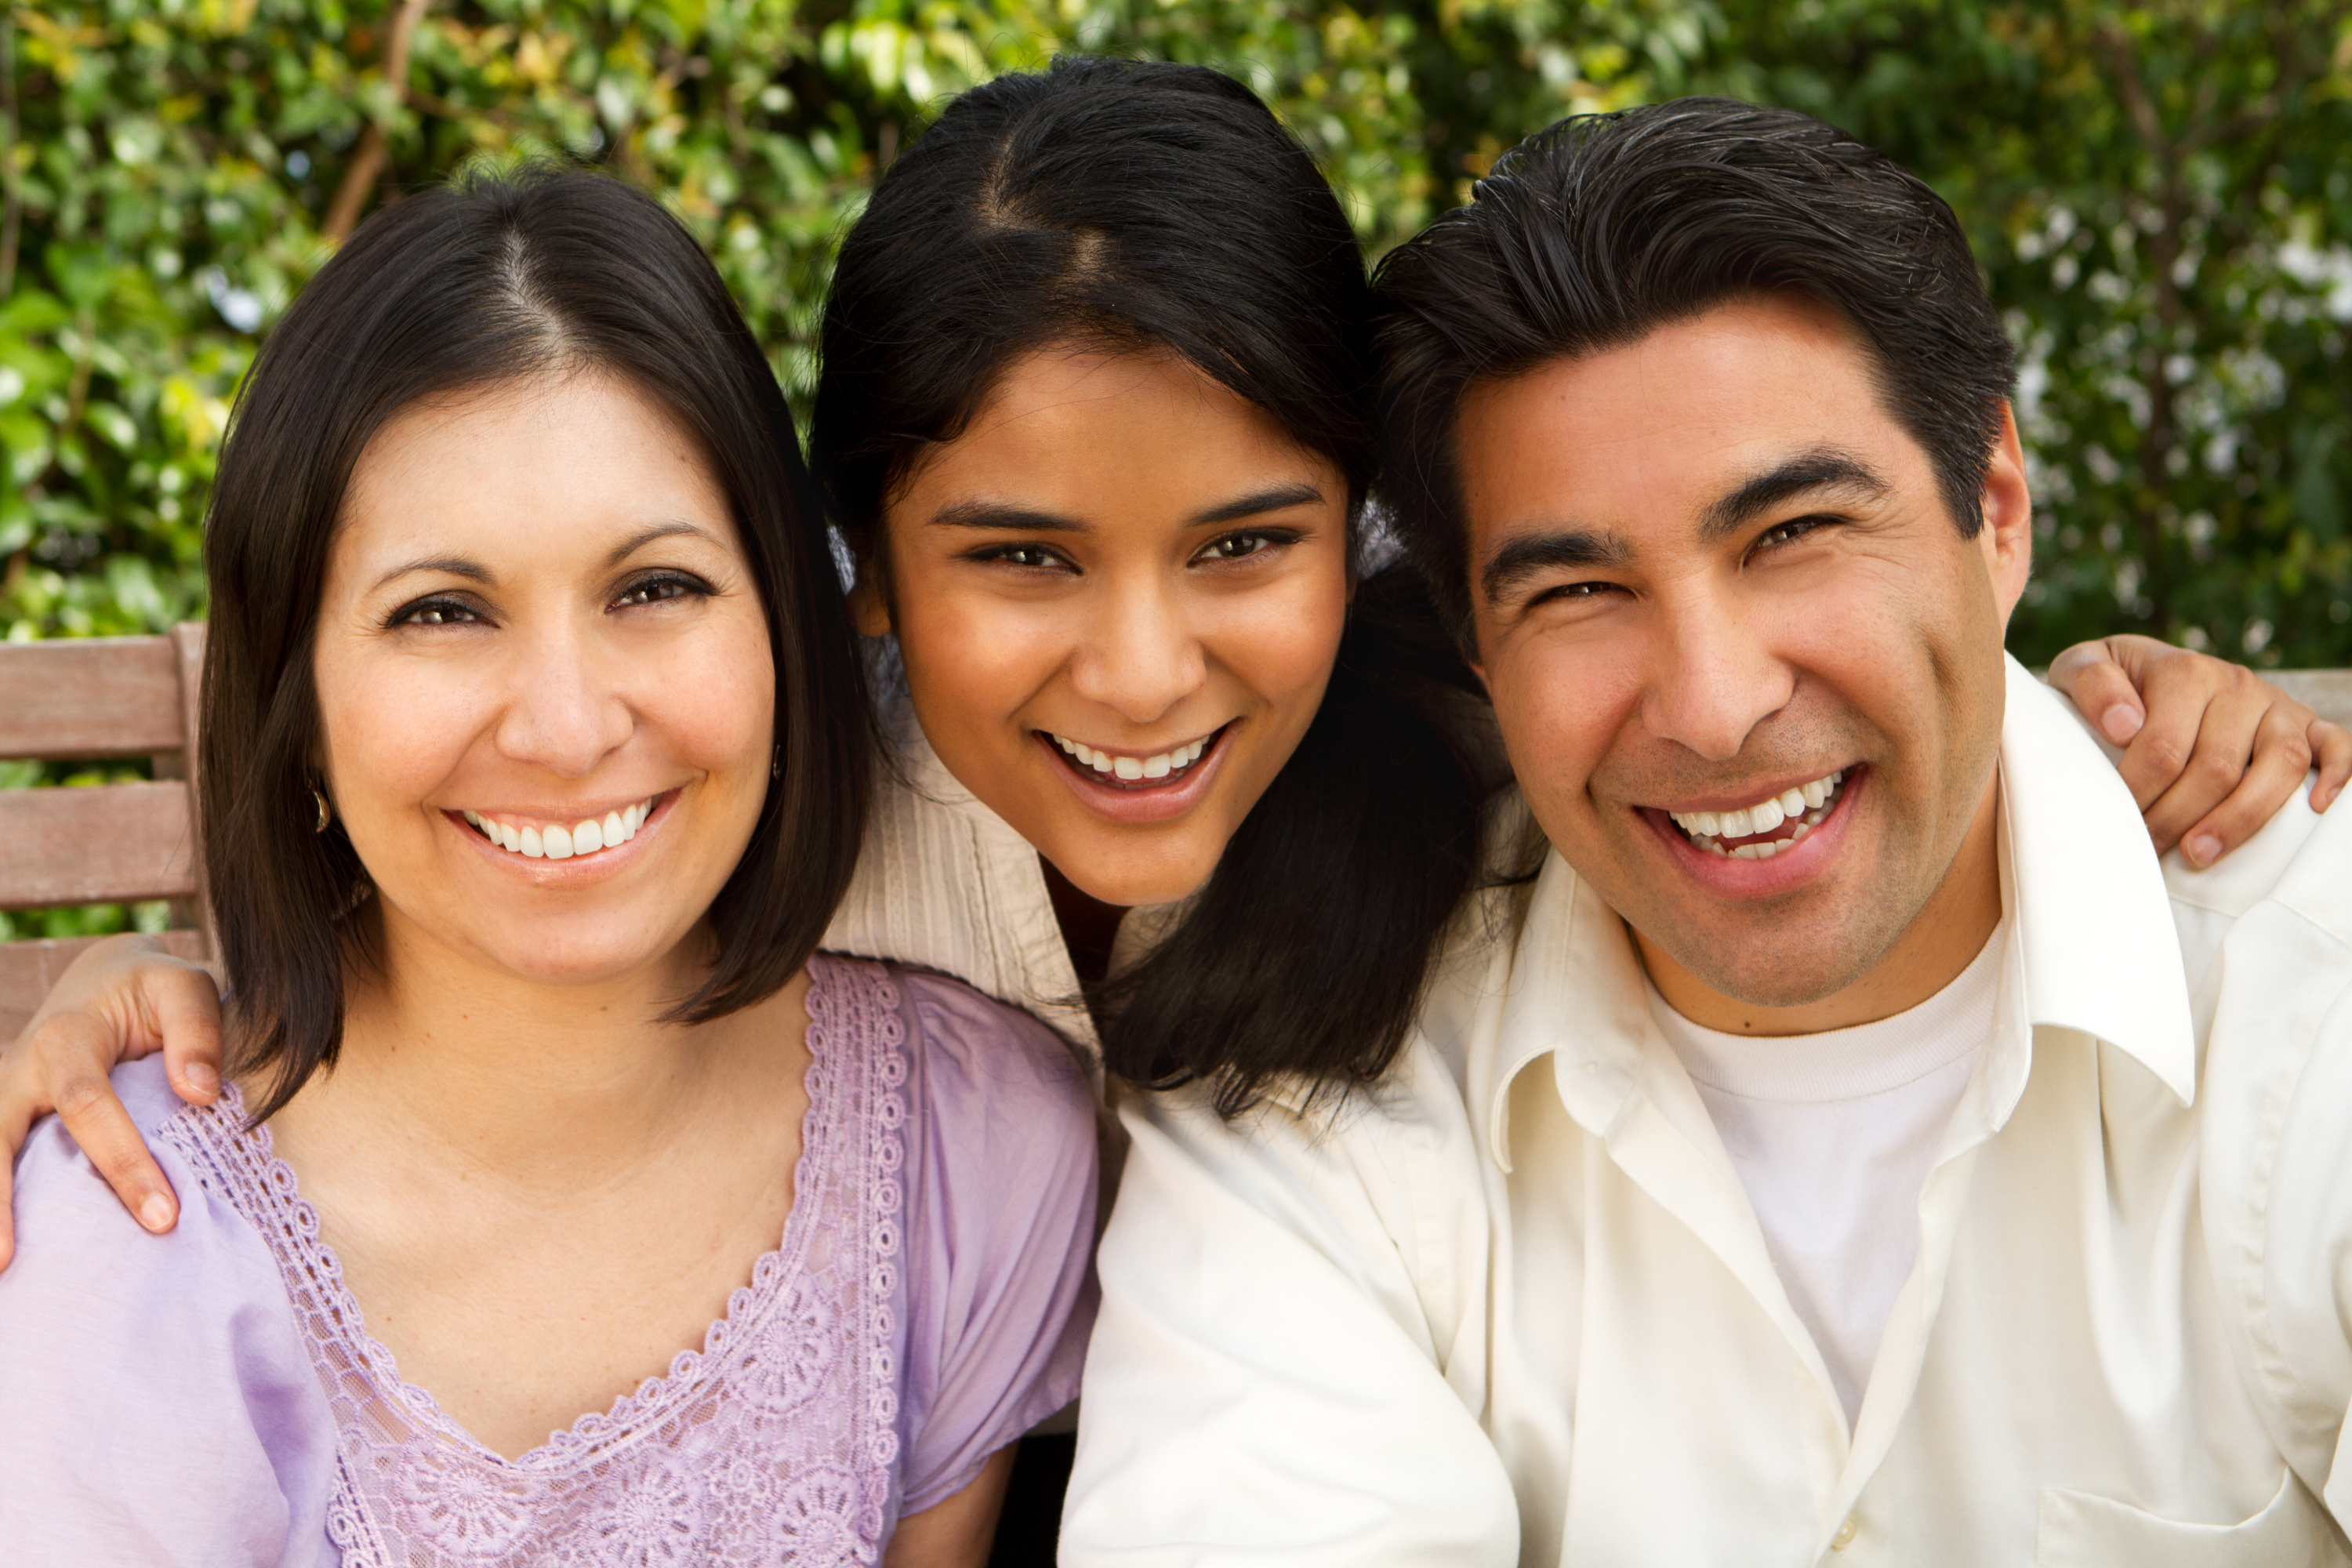 ခုံတန်းရှည်ပေါ်တွင် ပြုံးနေသော ဟစ်စပန်နစ်မိသားစု သုံးယောက်